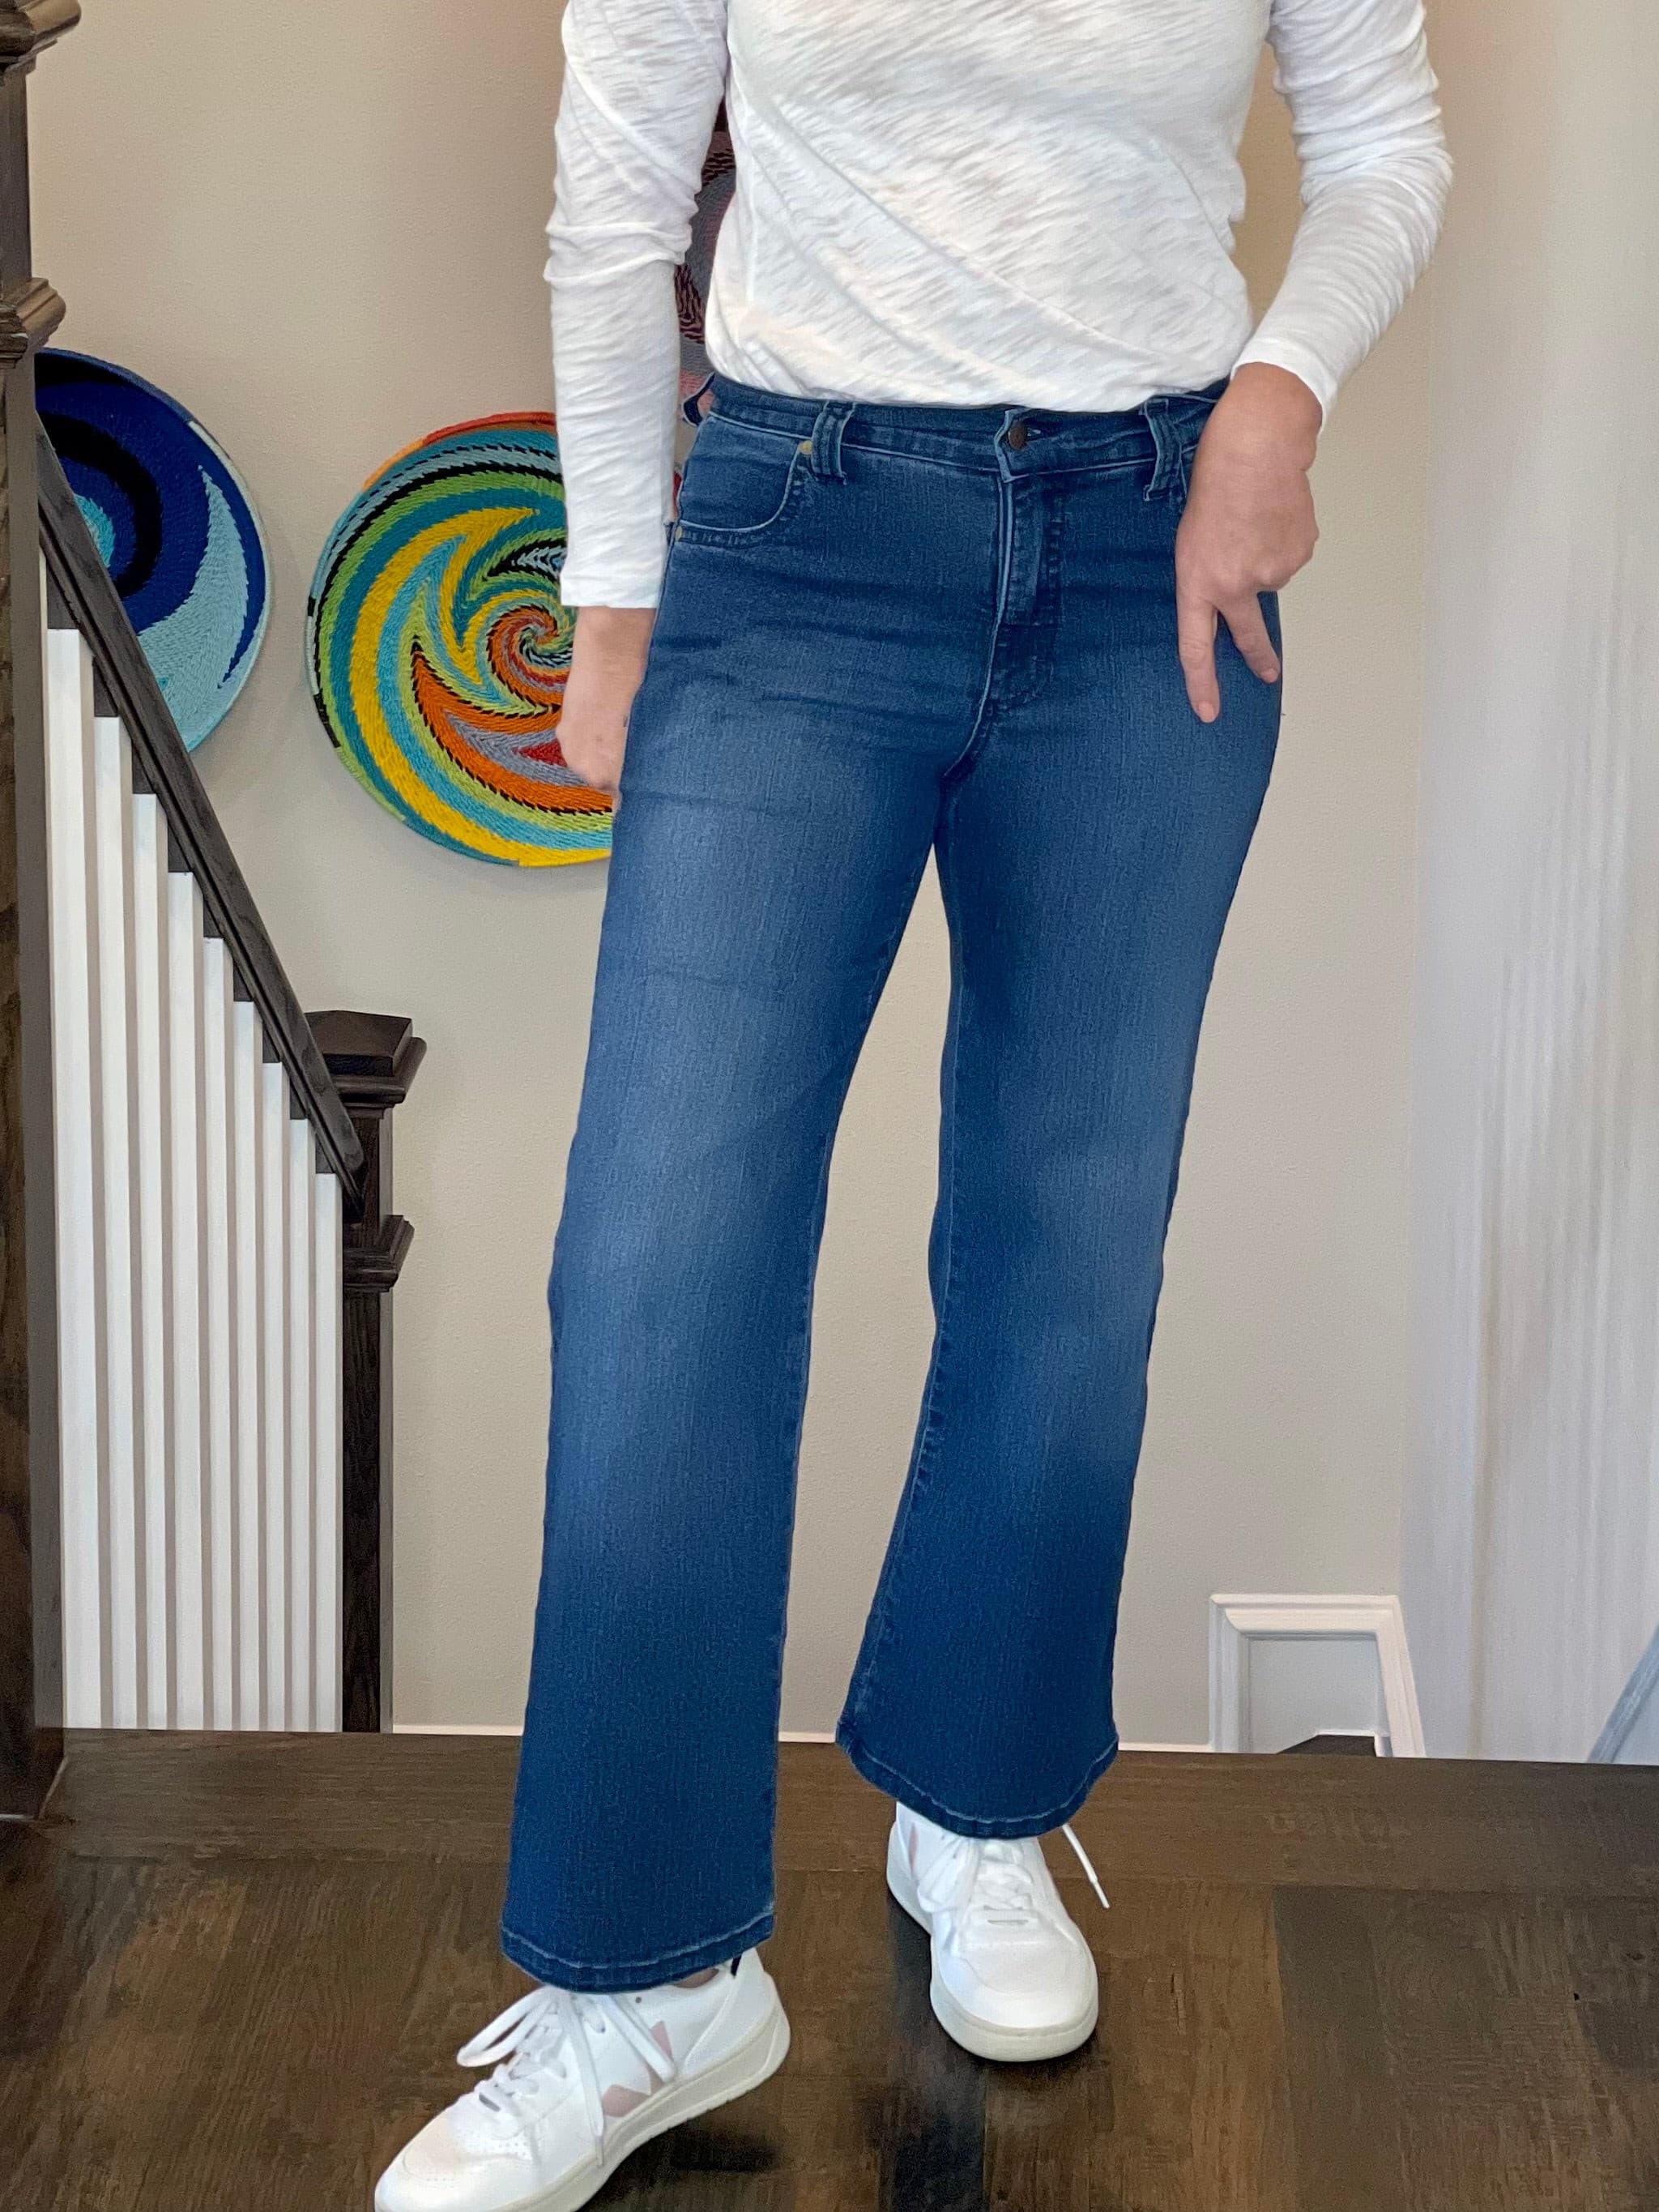 Karen Kane Wide Leg Jeans.